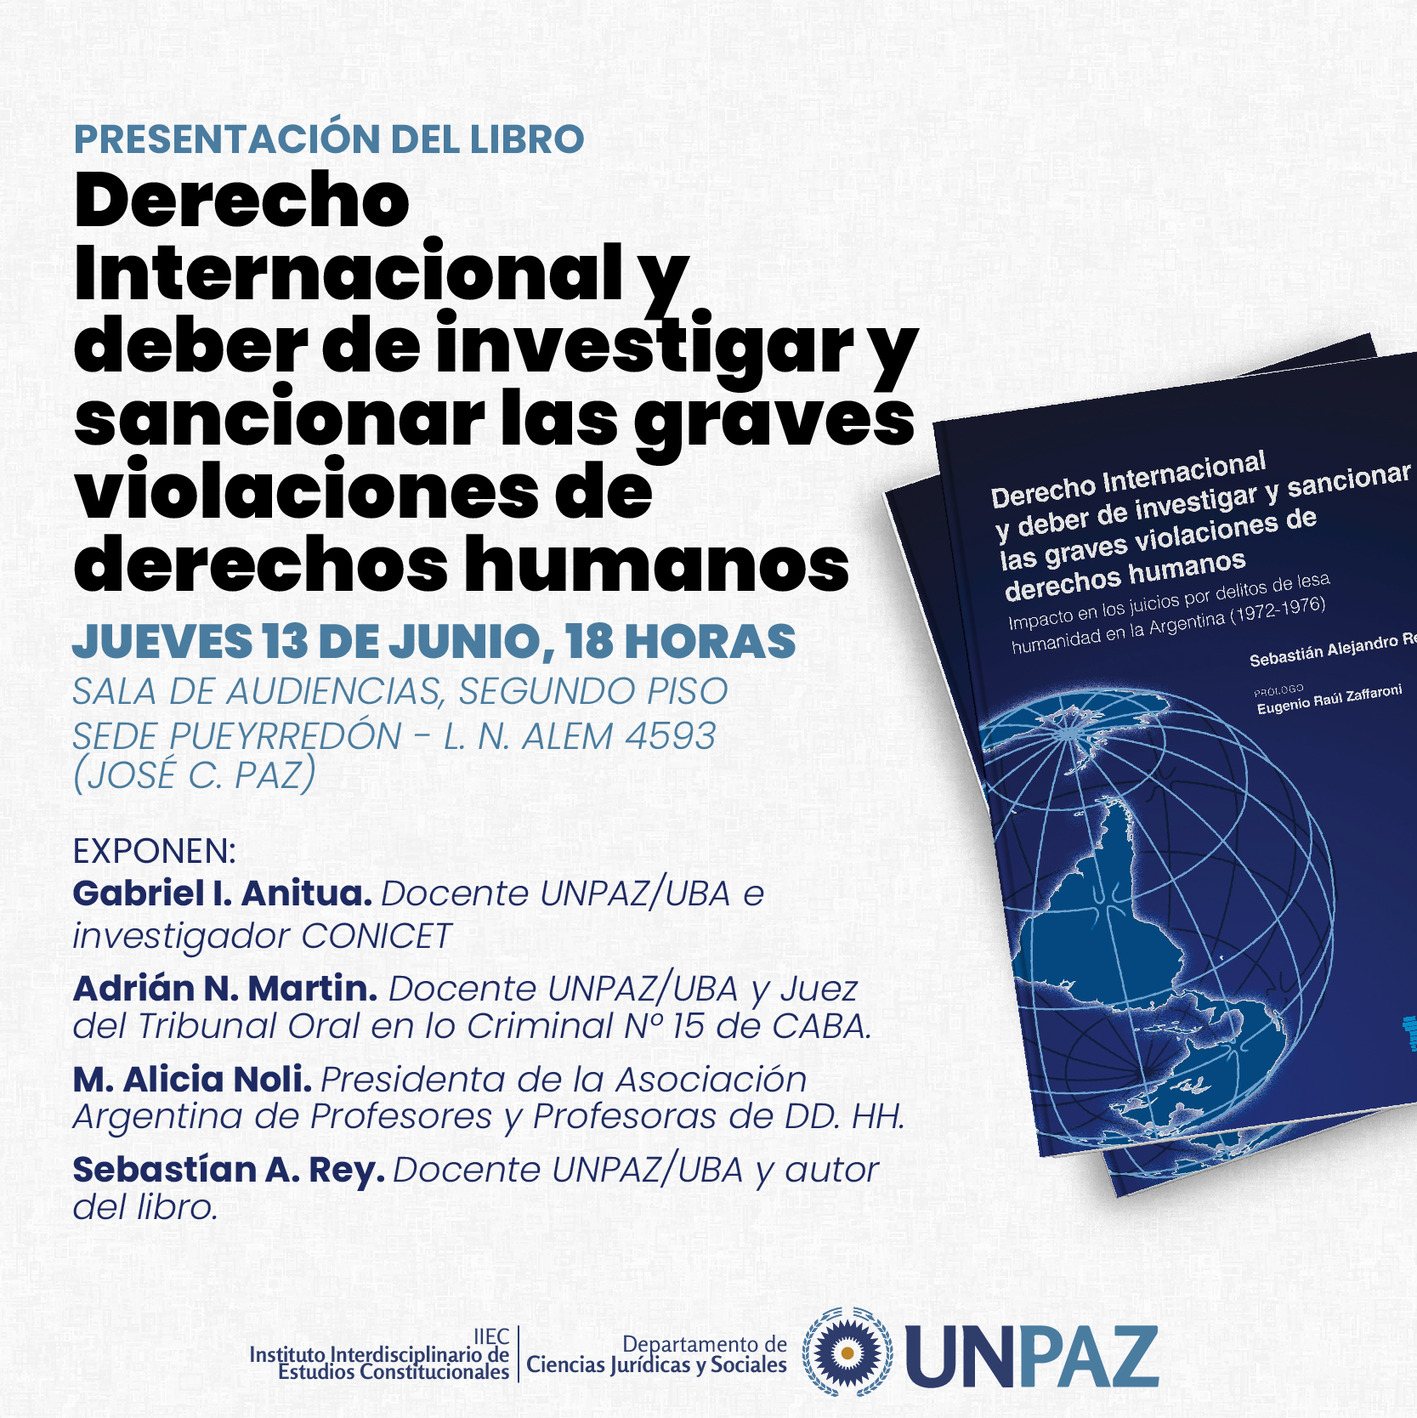 Derecho internacional